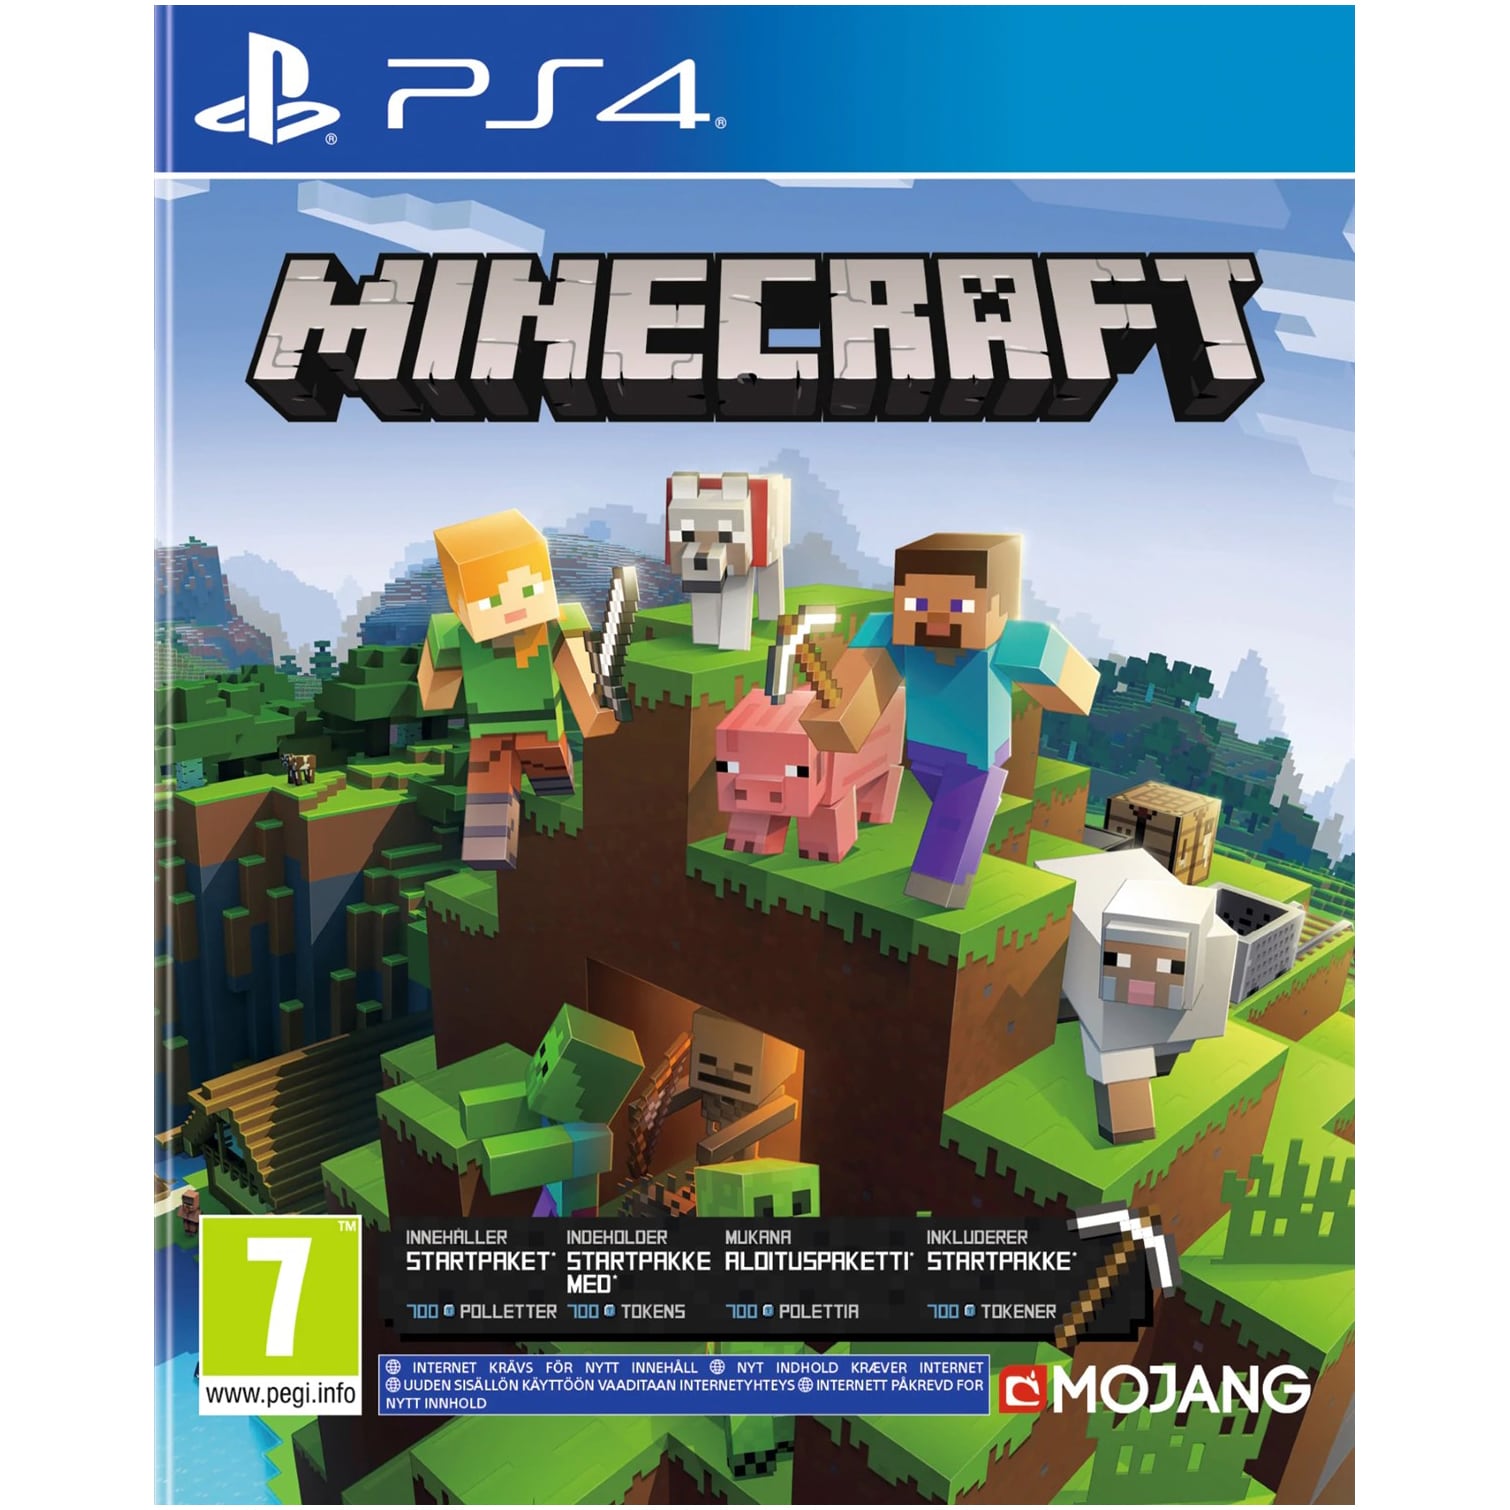 Minecraft Bedrock Edition - MC PS4 | Elgiganten